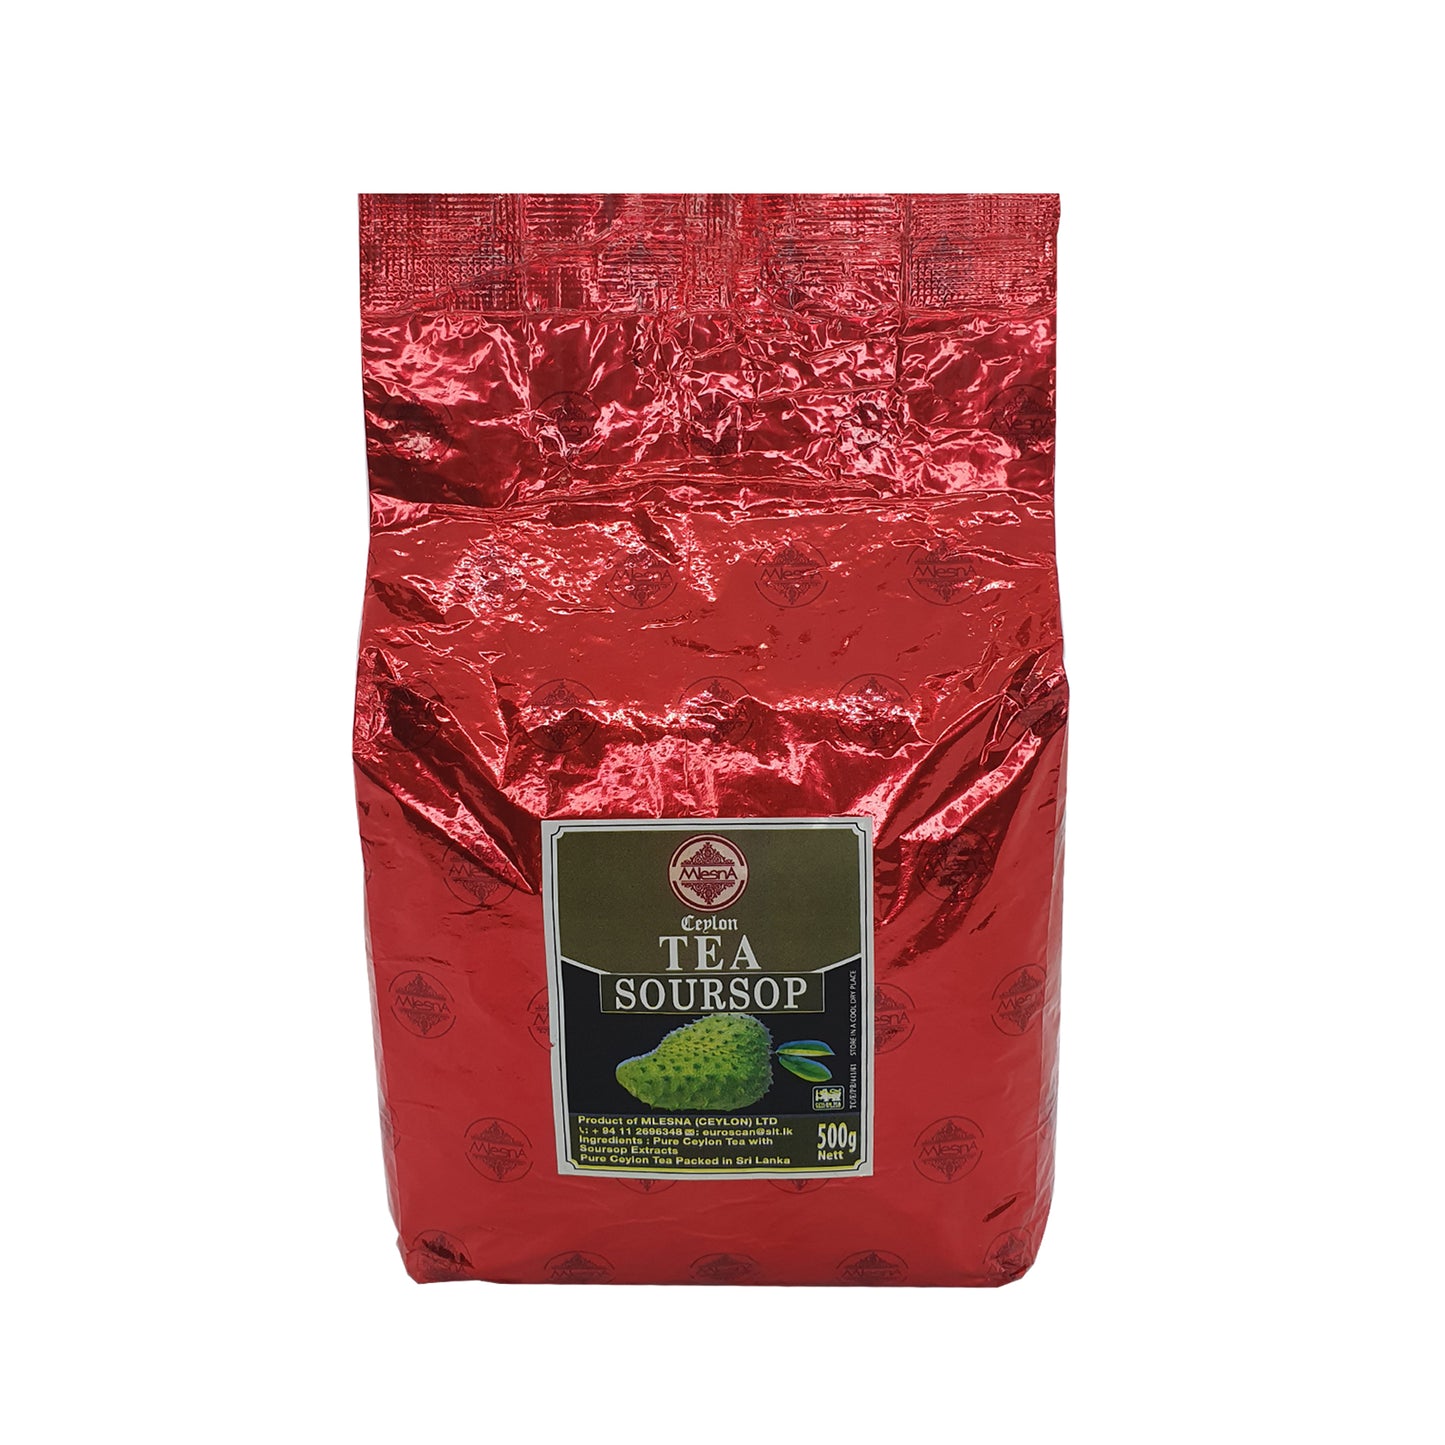 Mlesna Ceylon Tea Soursop černý čaj (500g)